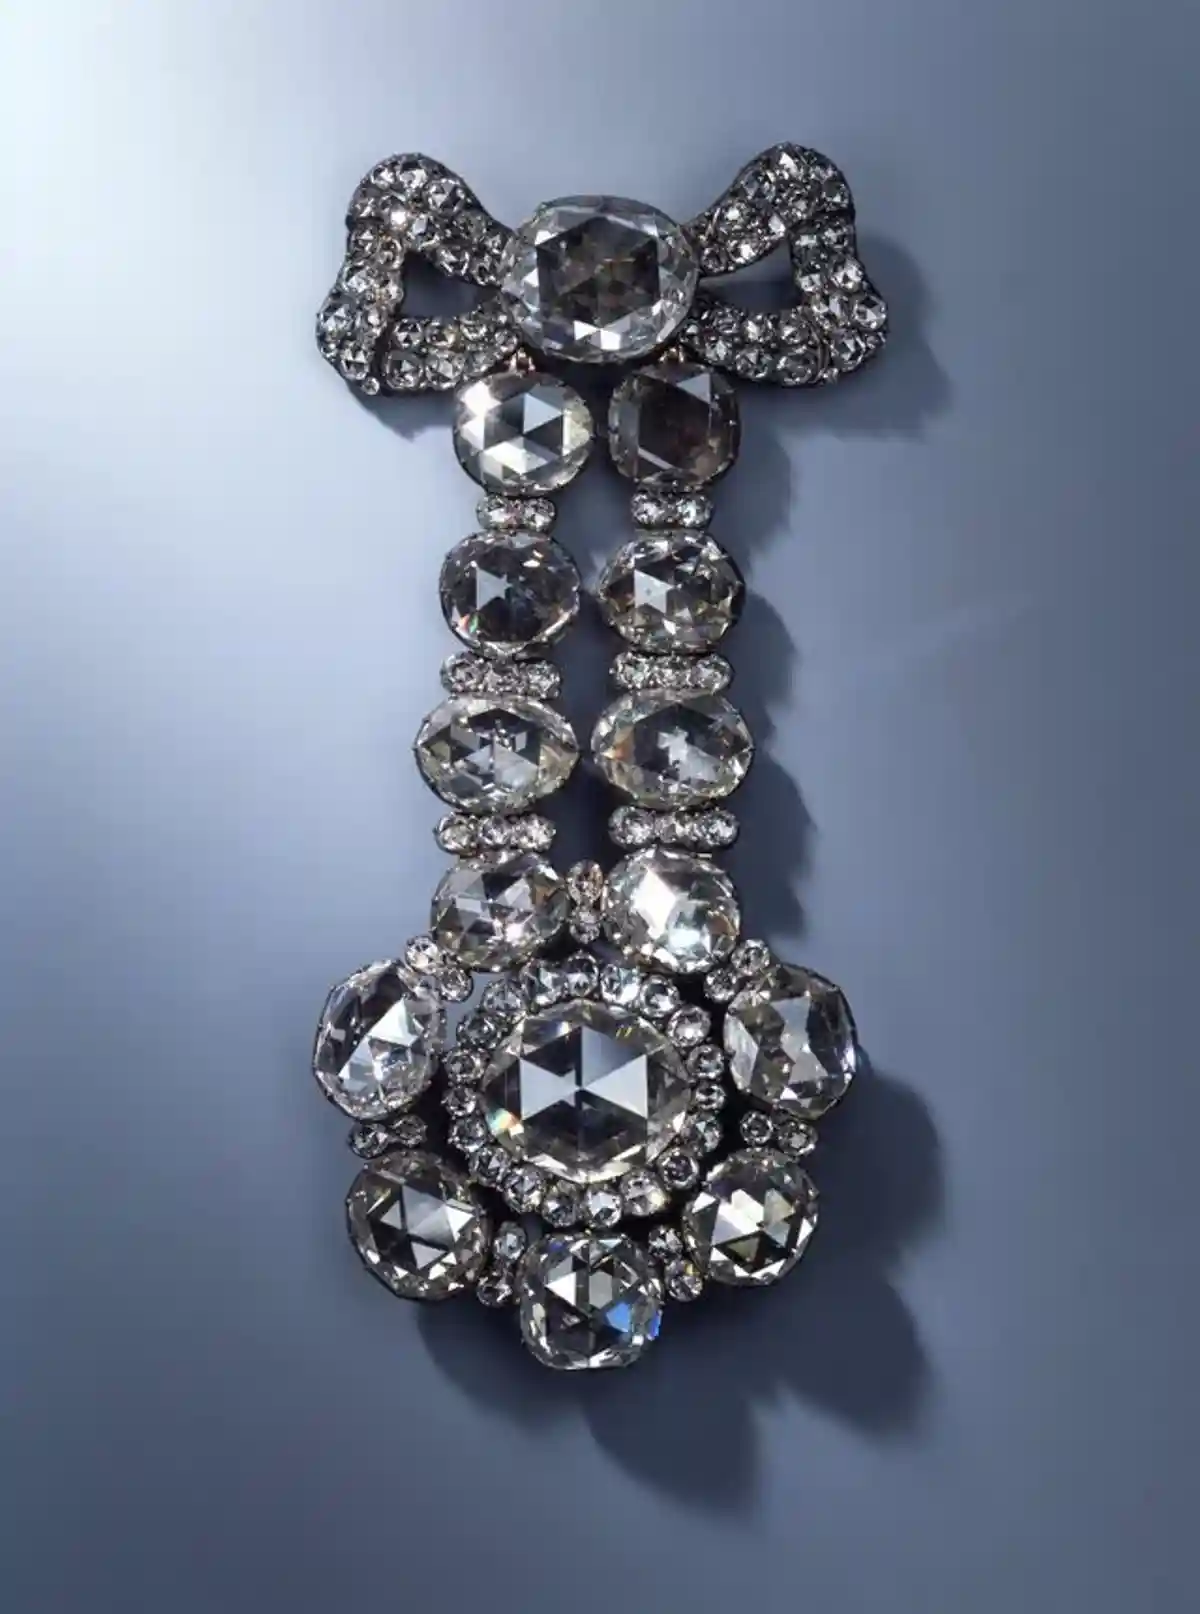 Украшение для головного убора из 15 крупных и 103 маленьких бриллиантов. Фото: пресс-служба Государственной коллекции искусств Дрездена